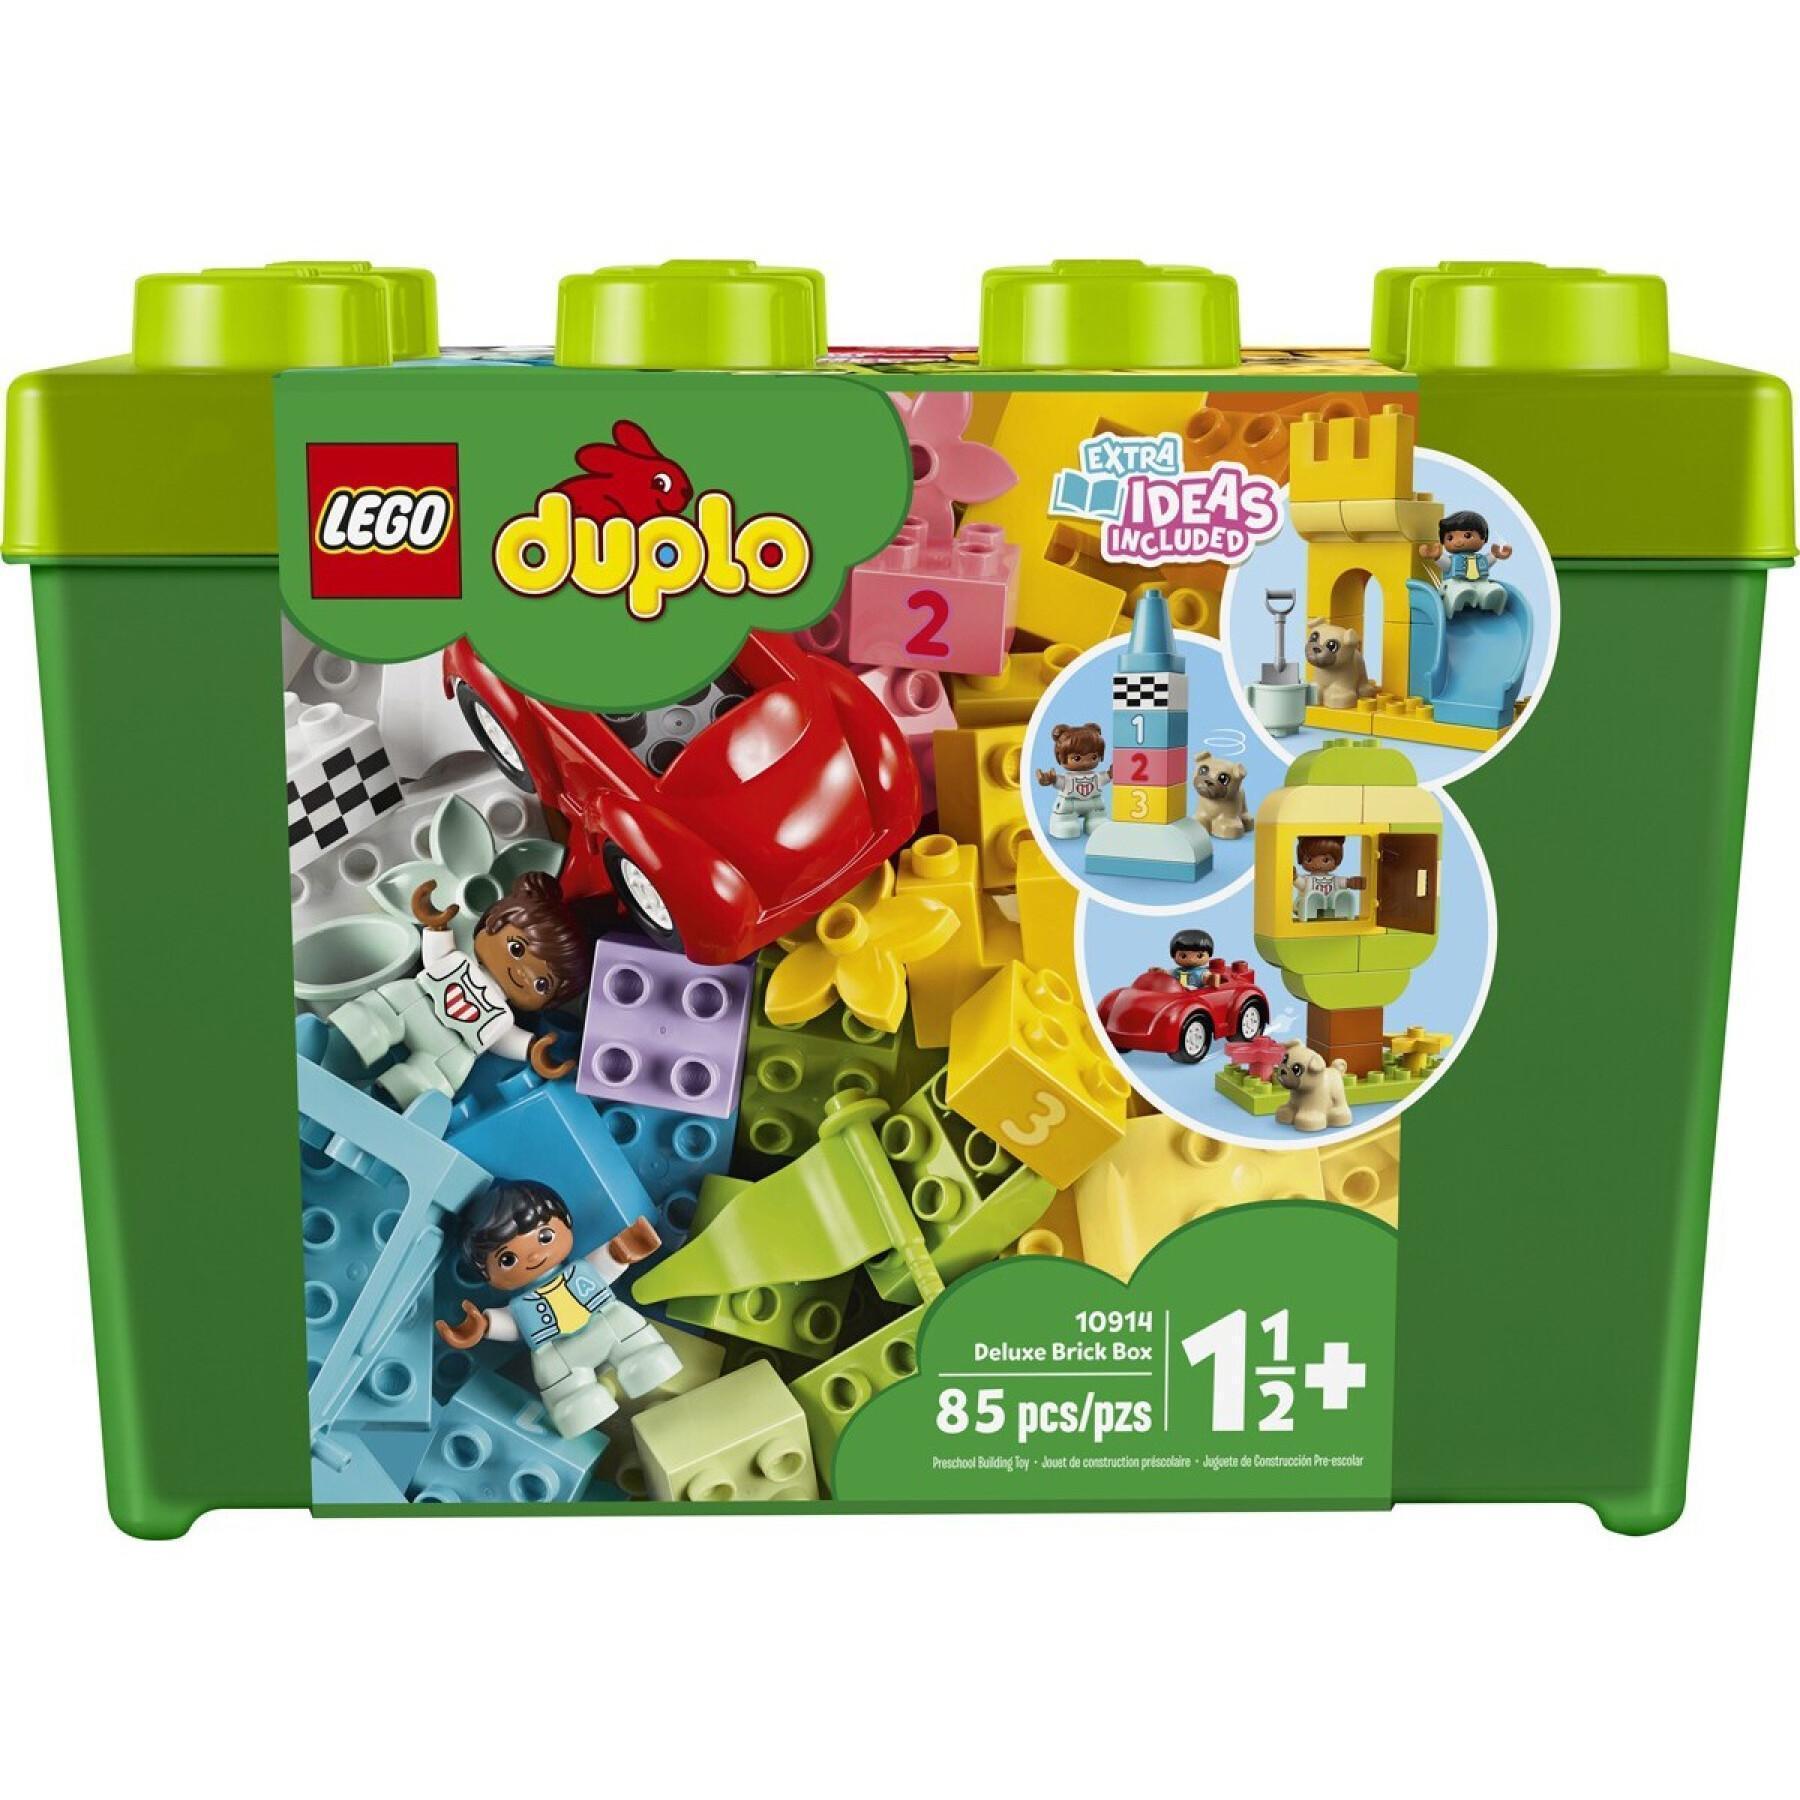 Boîte de briques deluxe duplo Lego